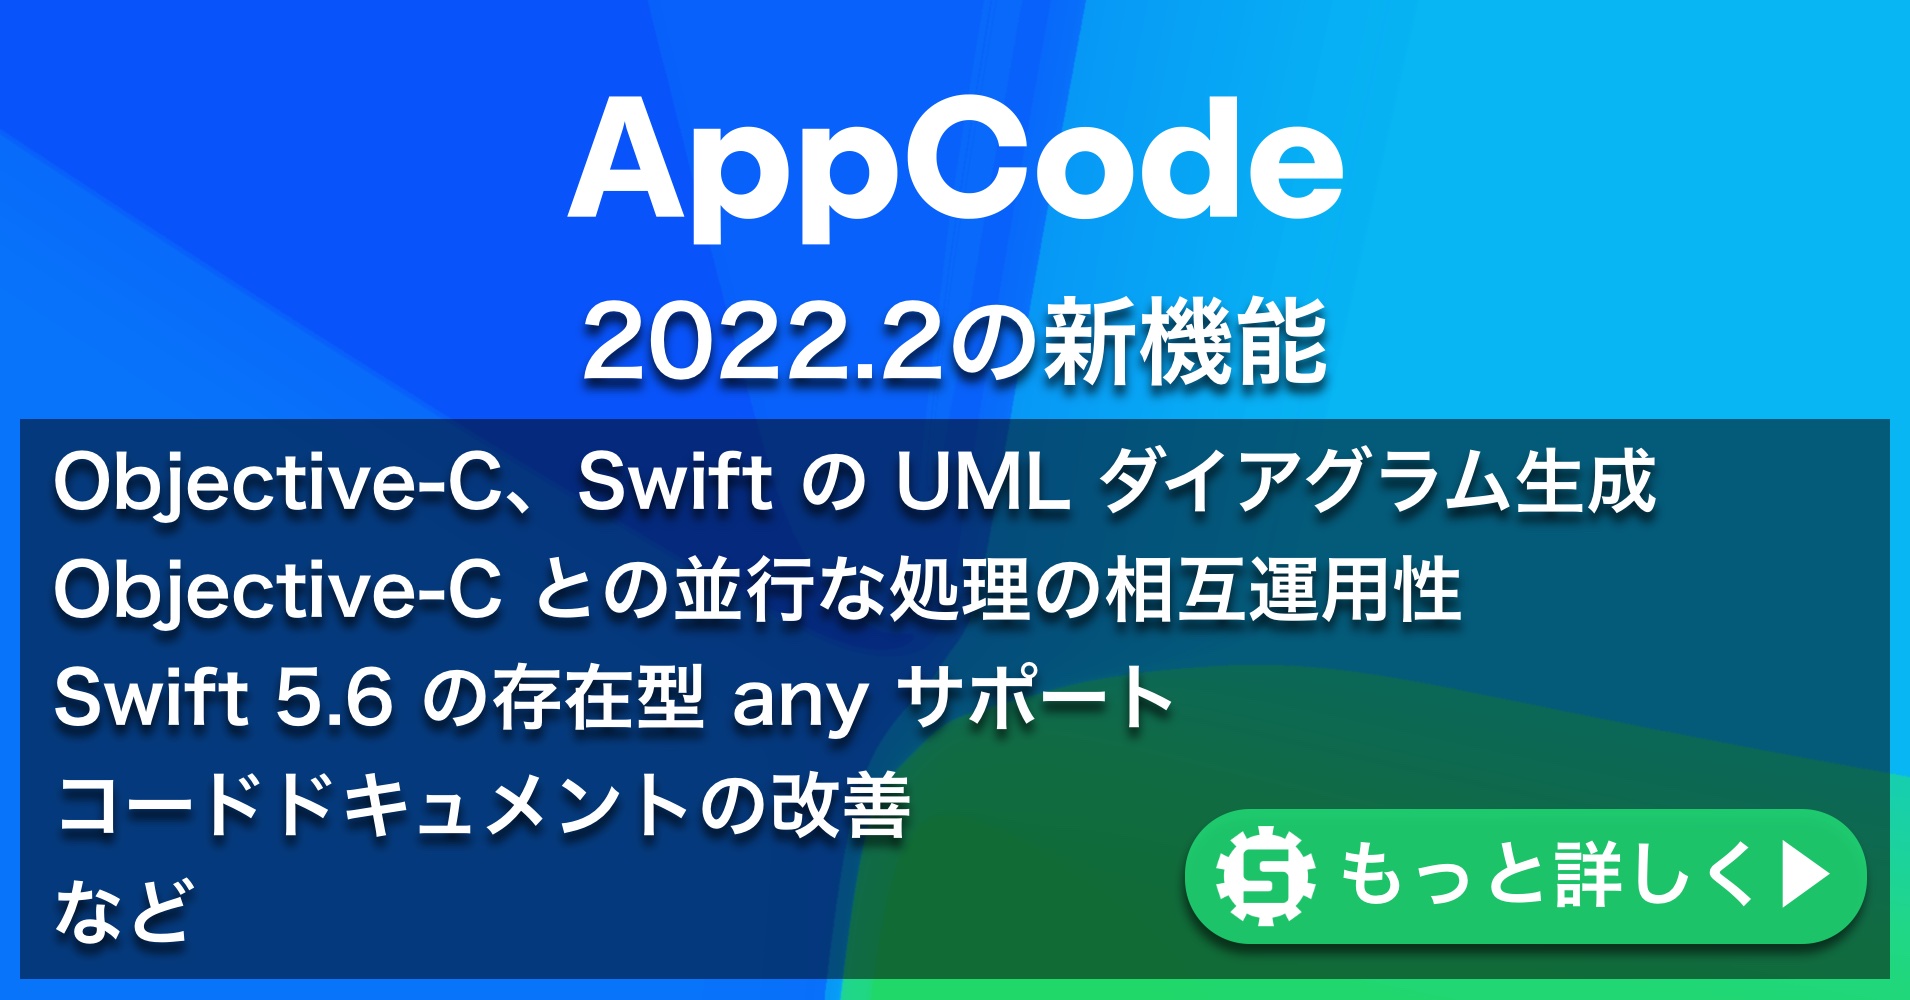 AppCode 2022.2の新機能